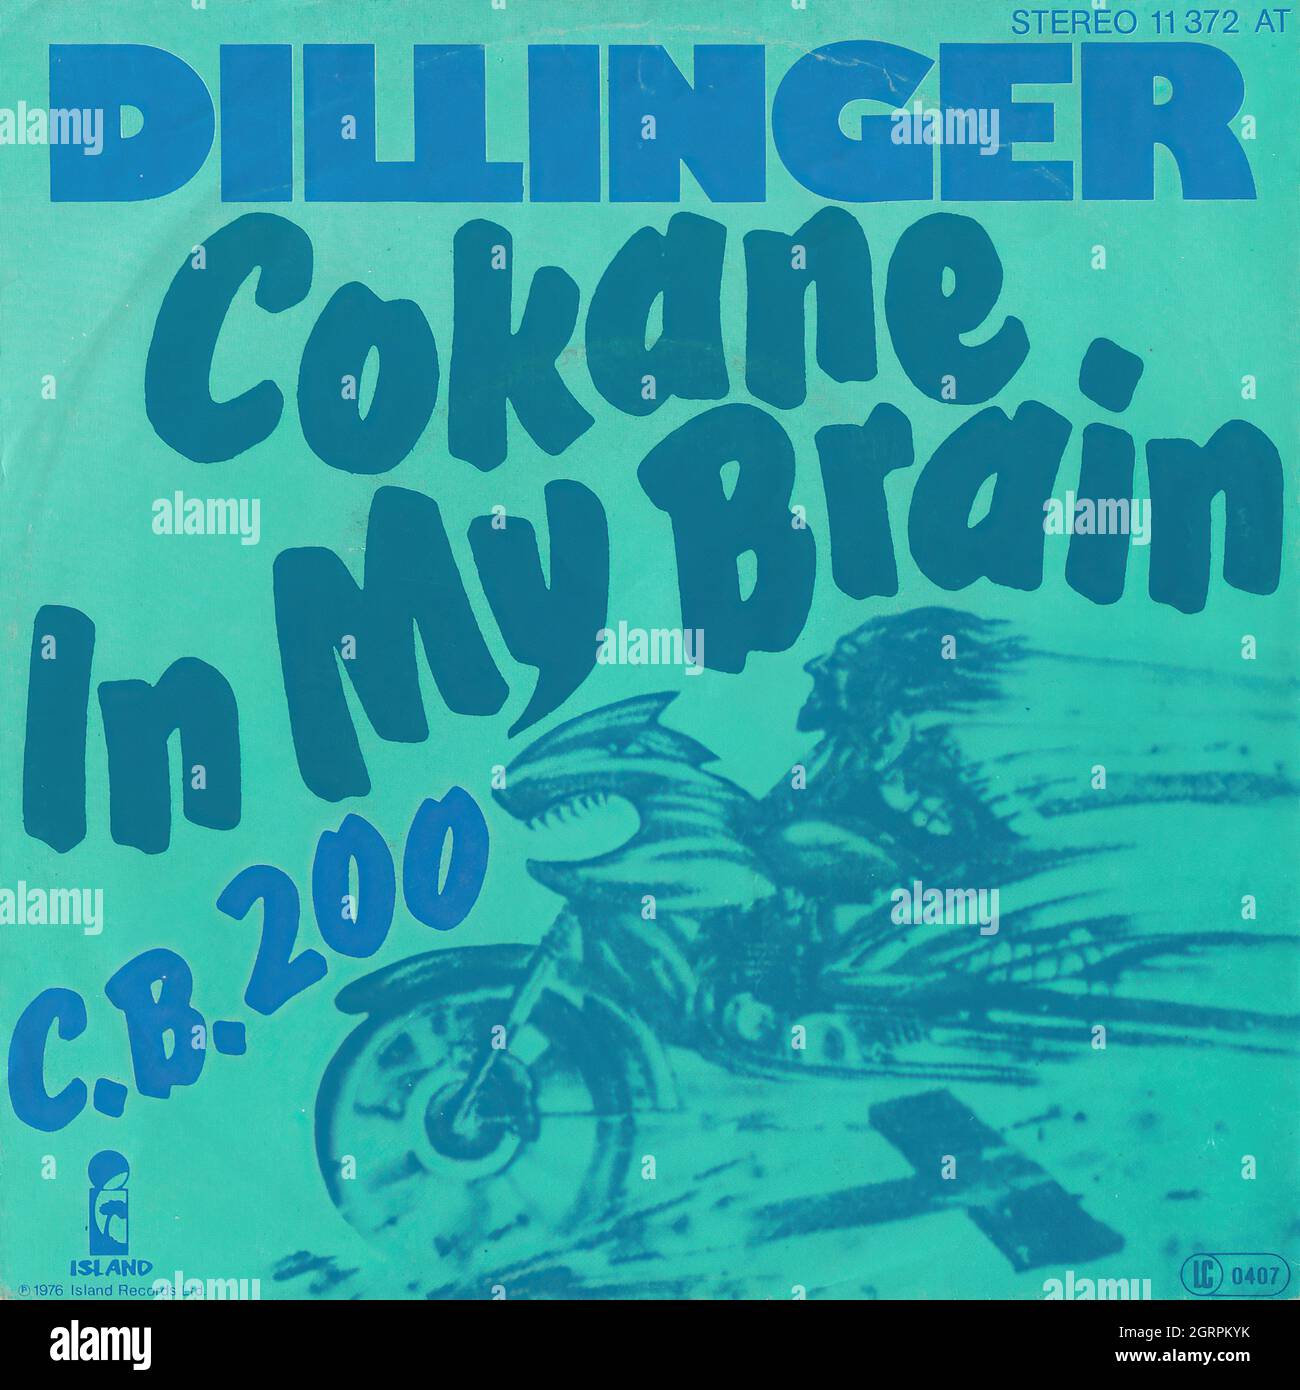 Dillinger - Cokane in my brain - C.B. 200 45rpm - Vintage Vinyl Record Cover Stock Photo